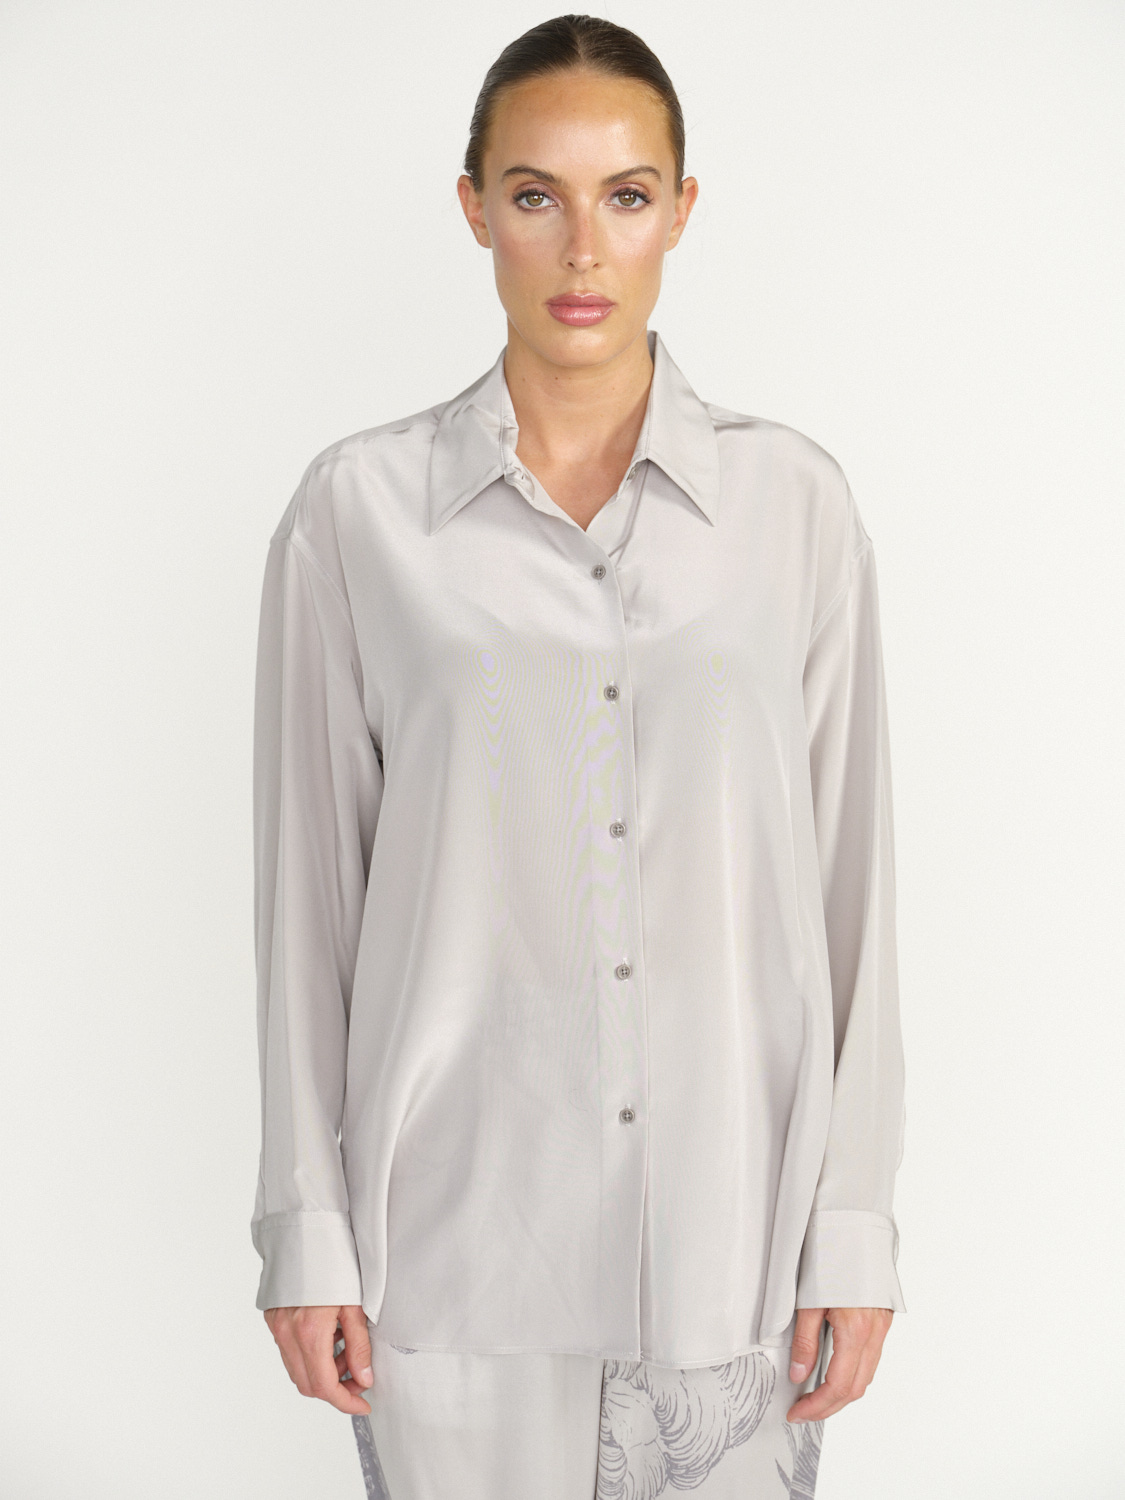 Julien Silk Shirt - Loose fitting silk blouse